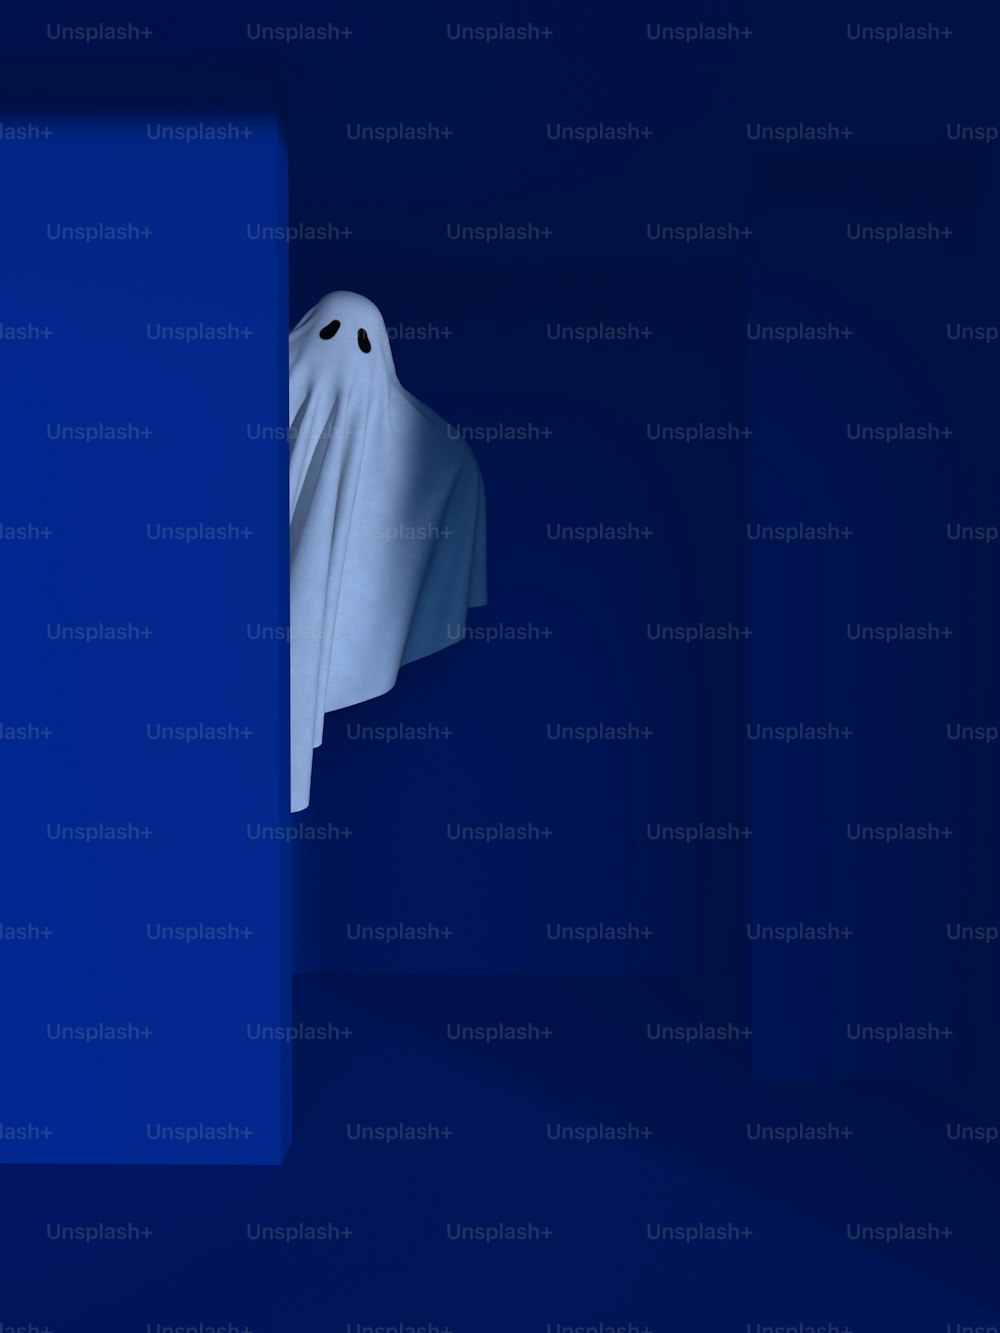 Un fantôme blanc jaillit d’un mur bleu